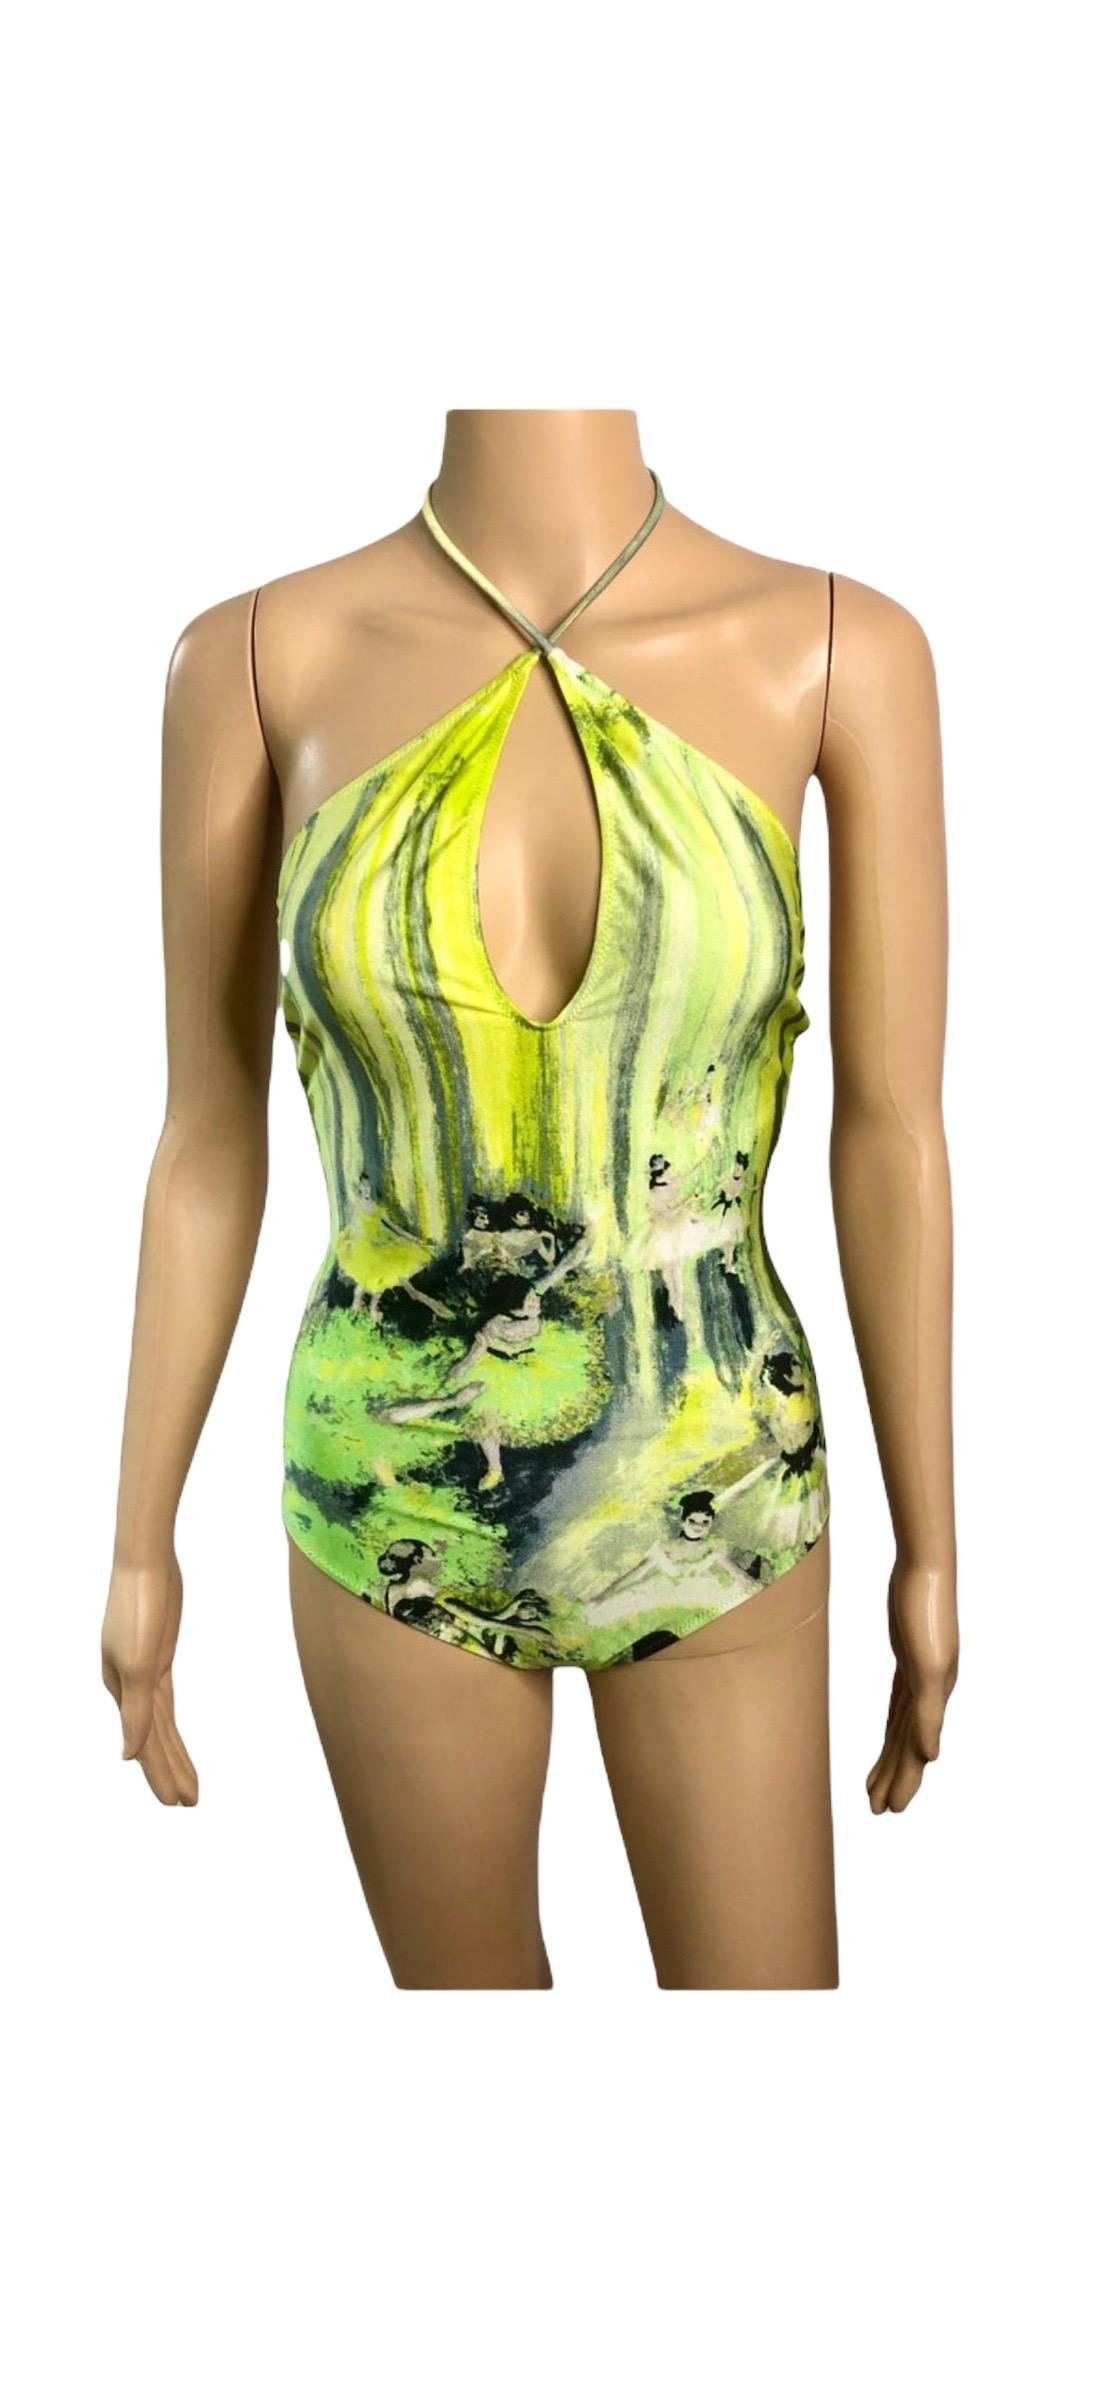 Jean Paul Gaultier Soleil S/S 2004 Degas Ballet Bodysuit Swimwear Swimsuit For Sale 4